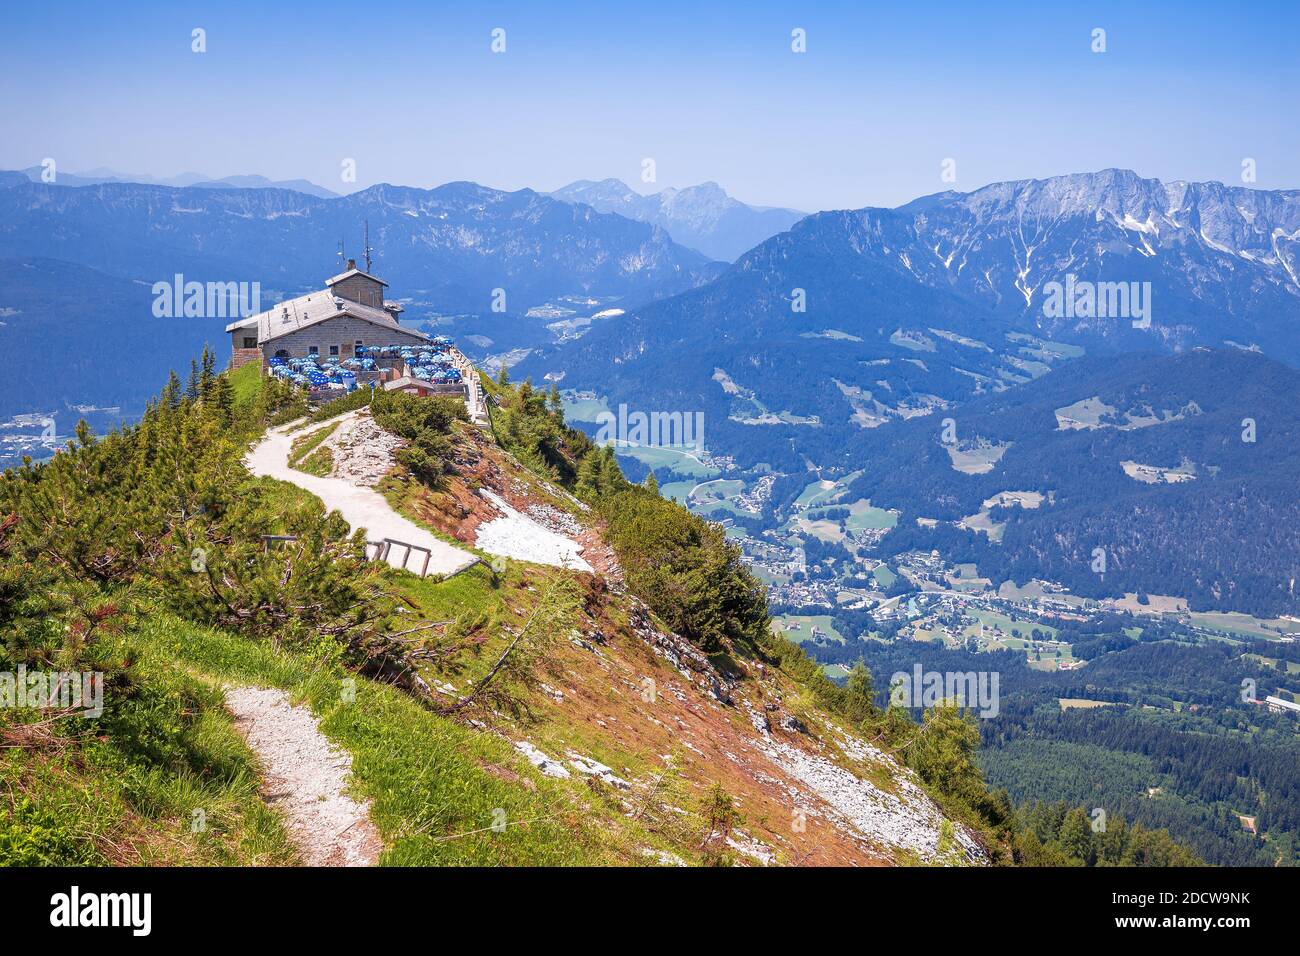 Eagle's Nest o Kehlsteinhaus escondite en la roca sobre la vista del paisaje alpino, Berchtesgadener Land, Baviera, Alemania Foto de stock